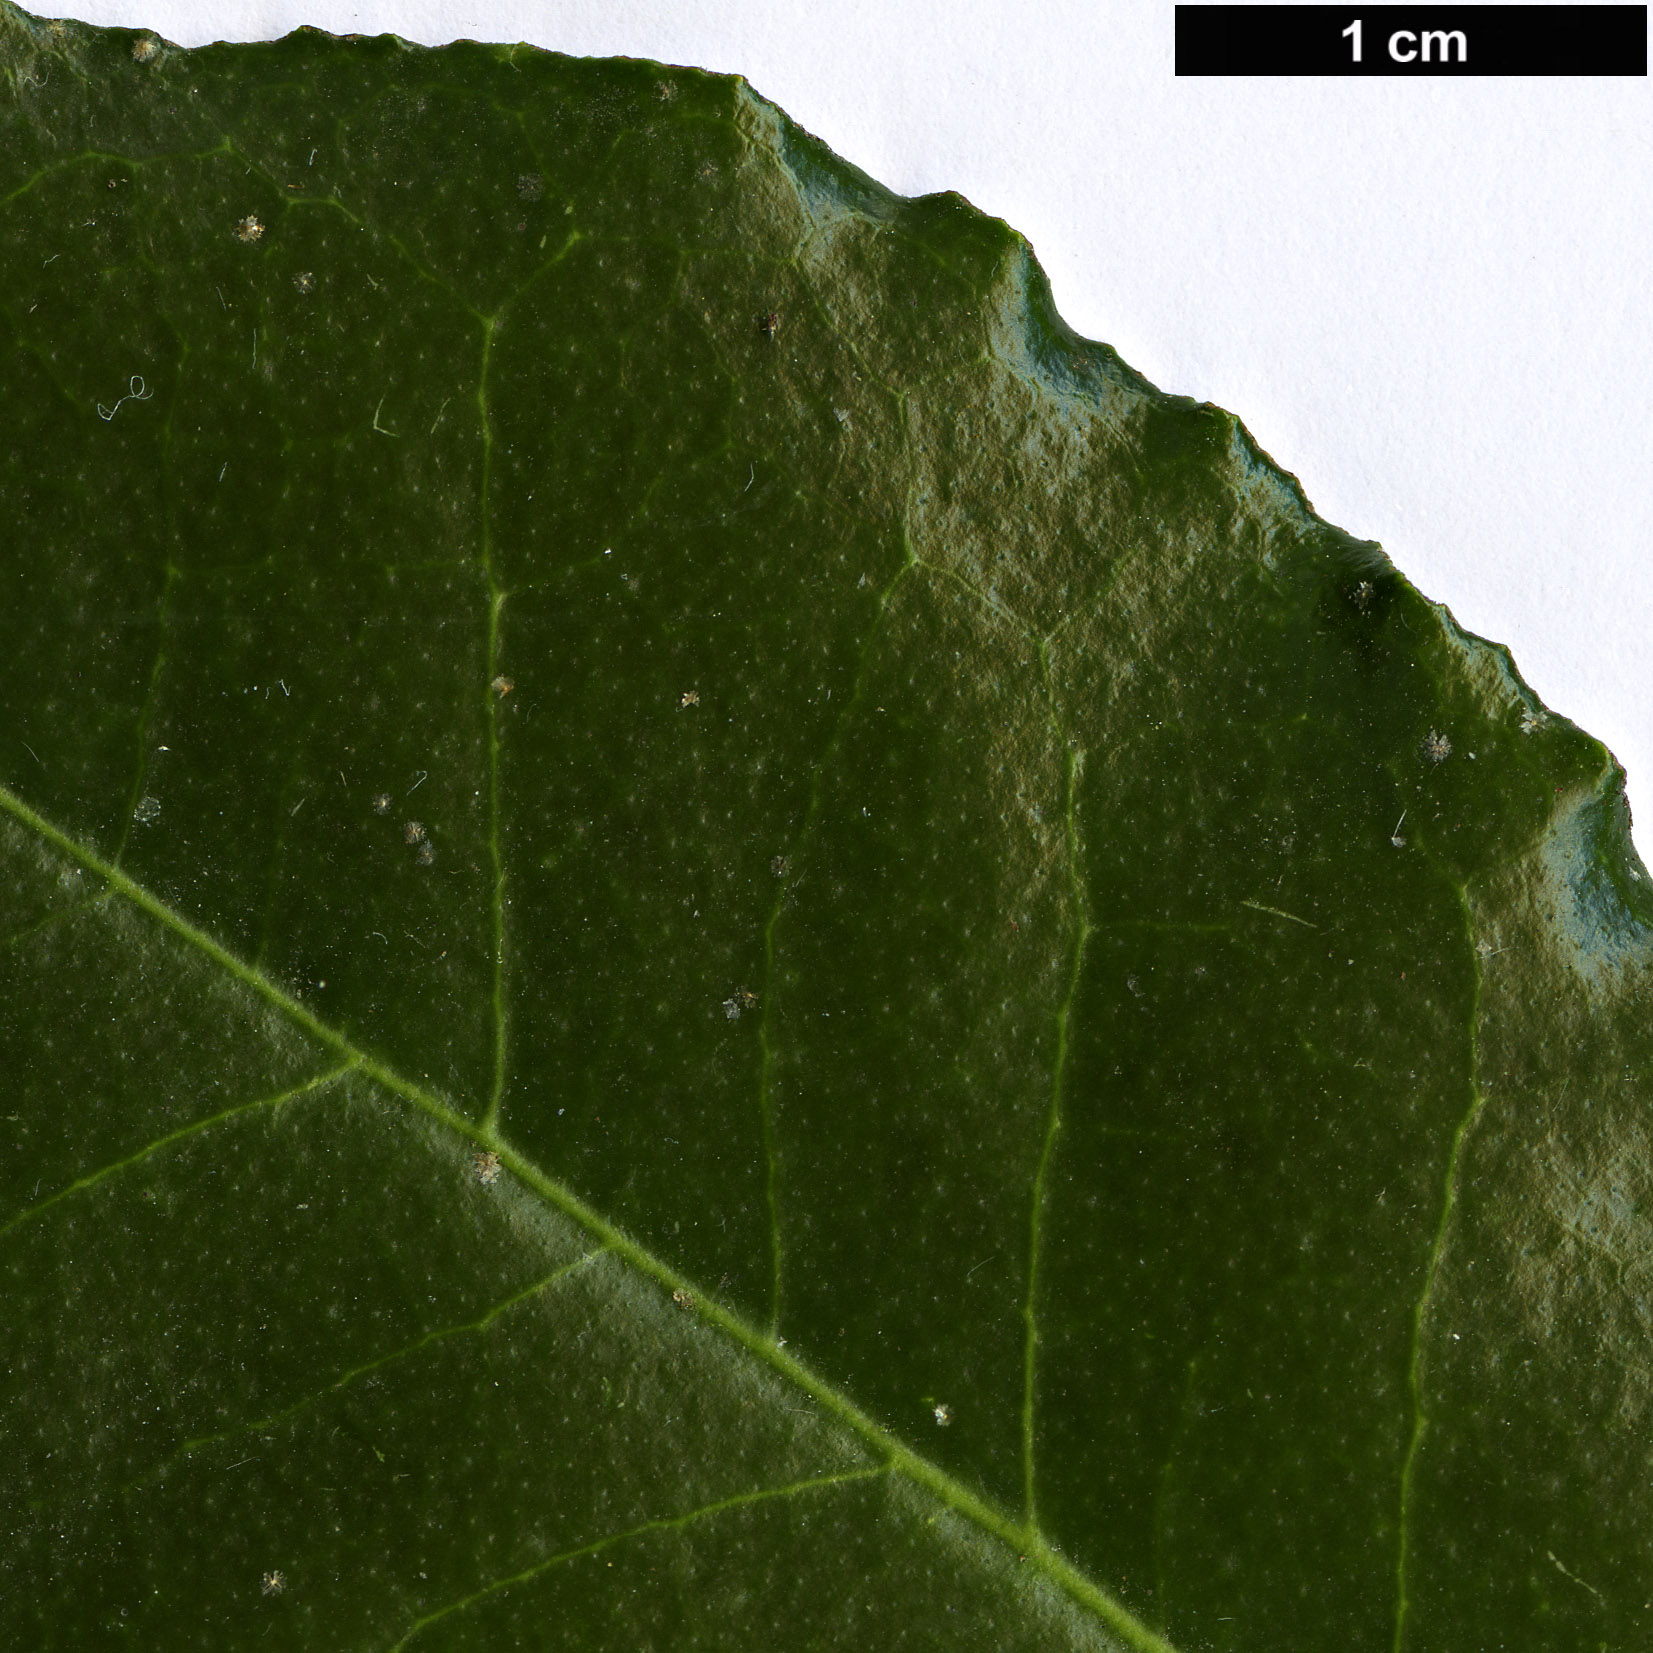 High resolution image: Family: Elaeagnaceae - Genus: Elaeagnus - Taxon: pungens